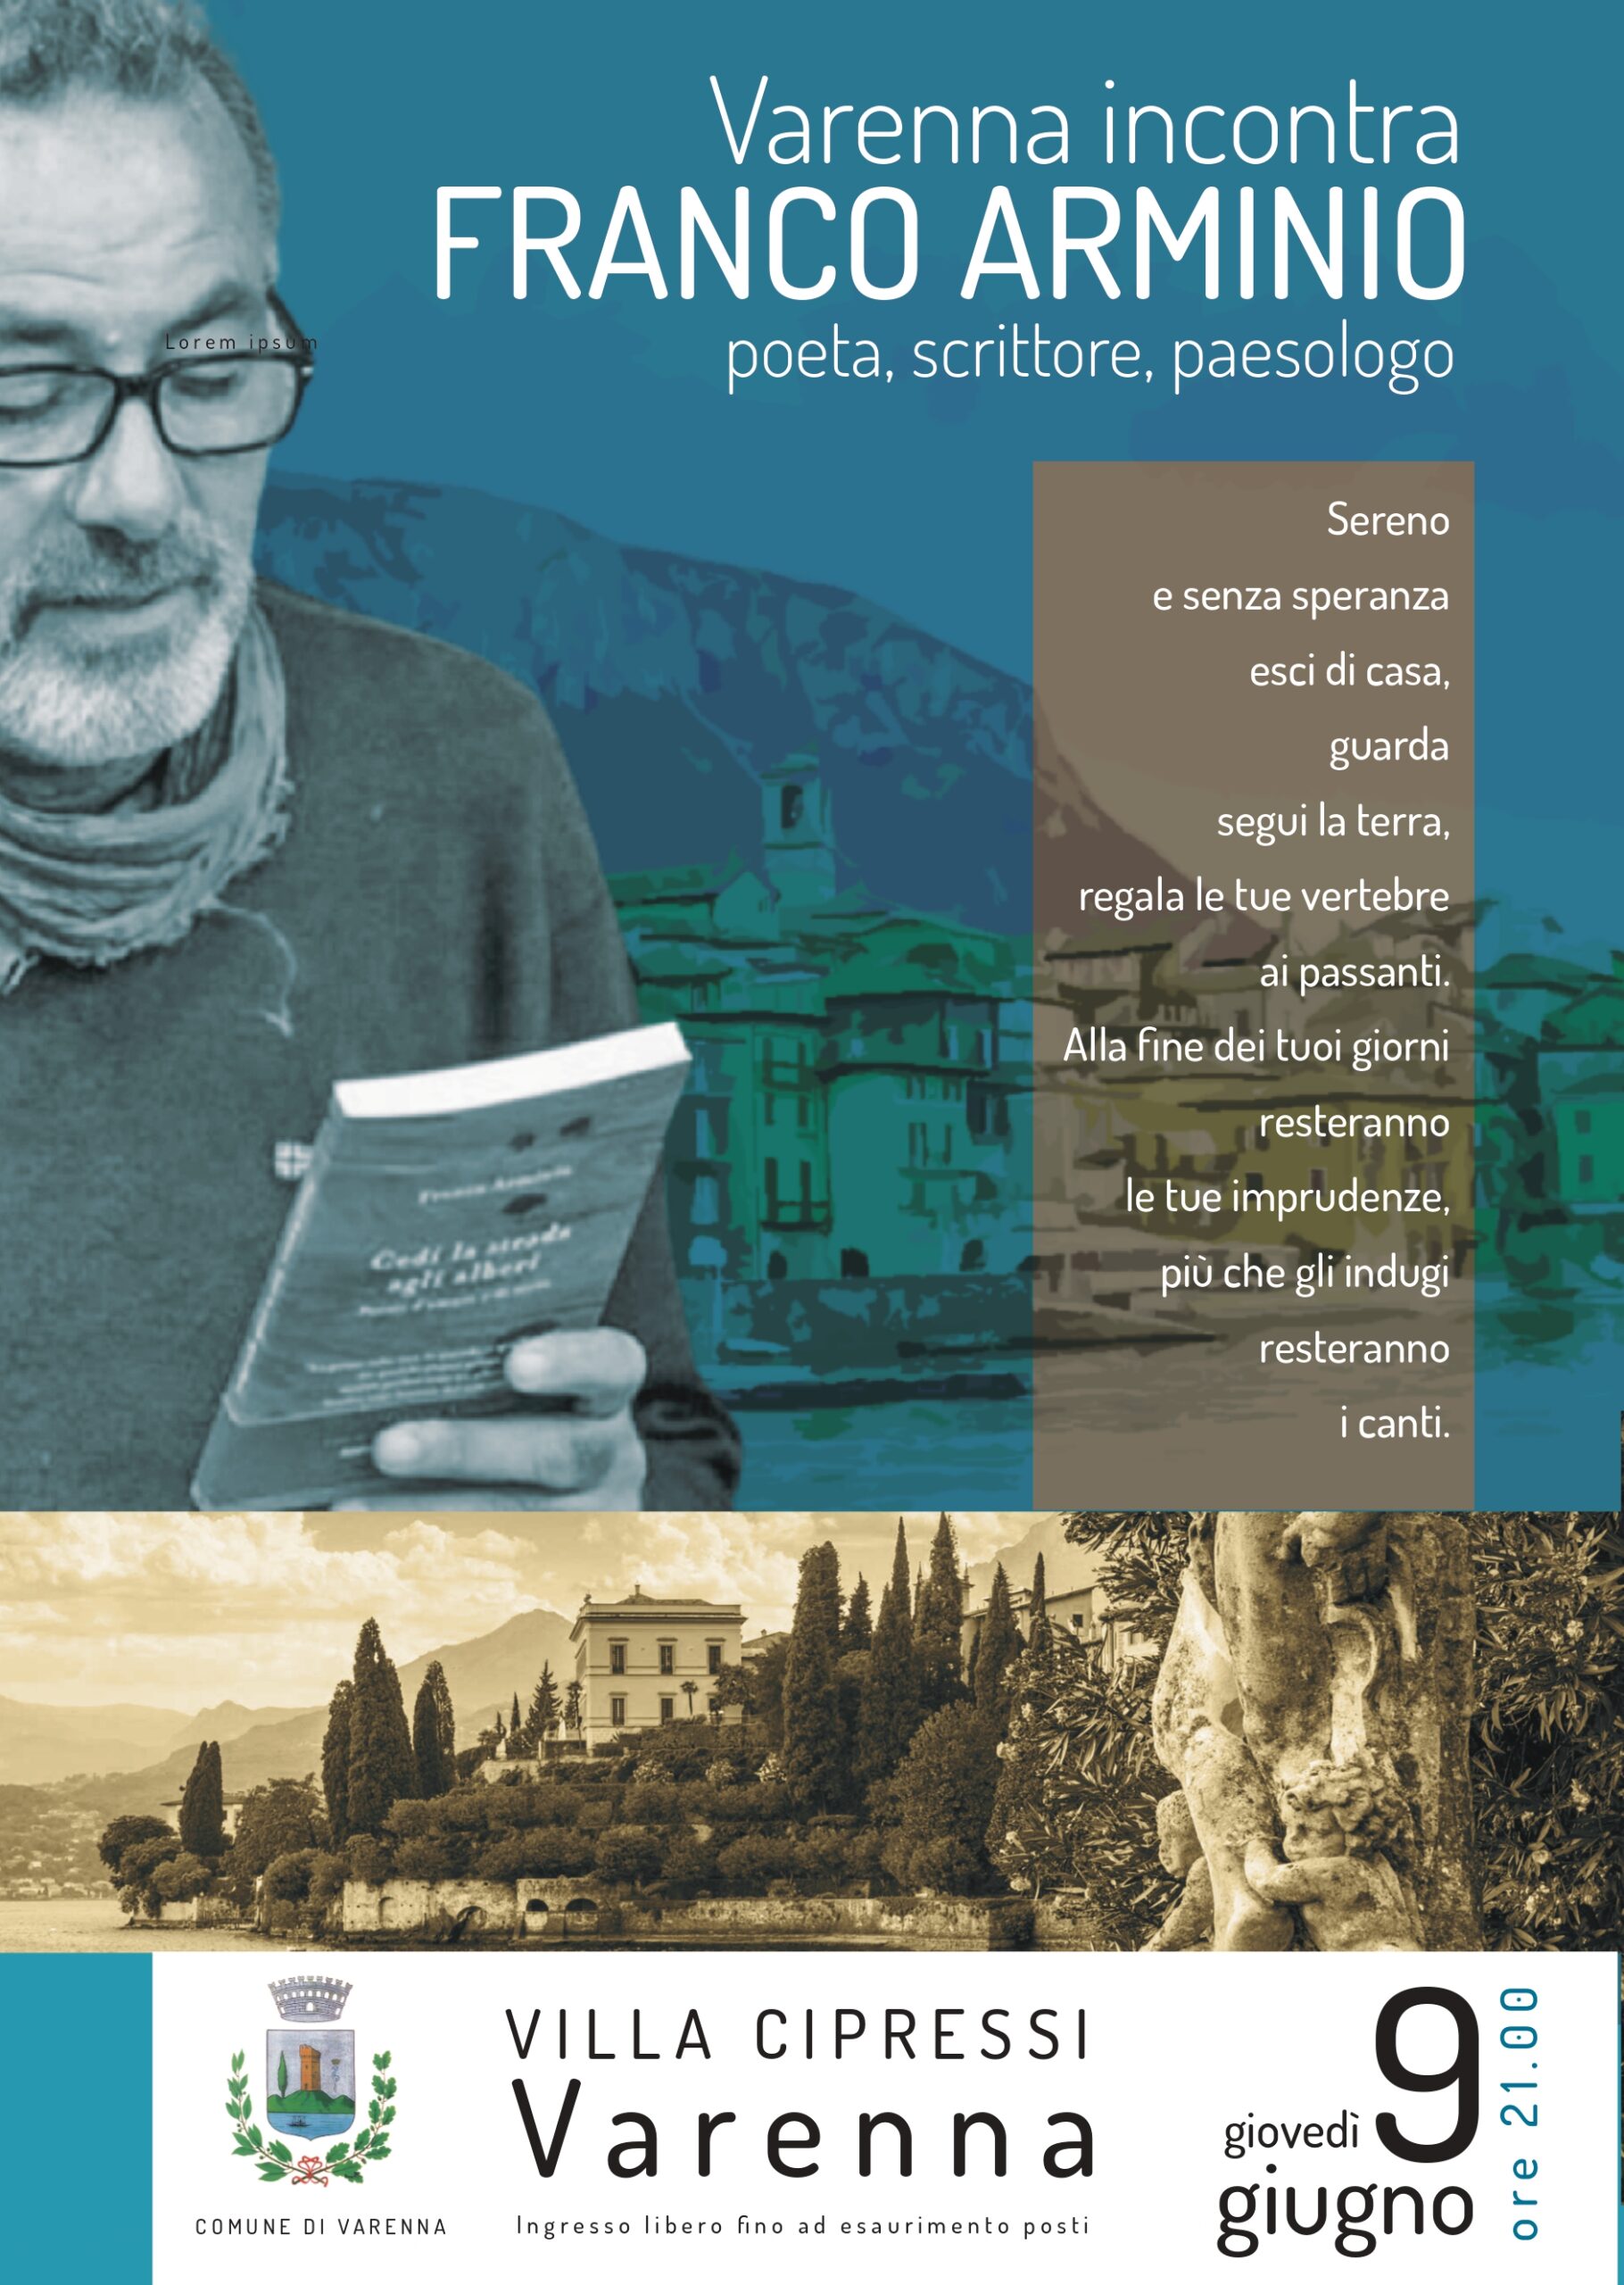 Domenica 3 settembre, il poeta Franco Arminio a Cagliari con il